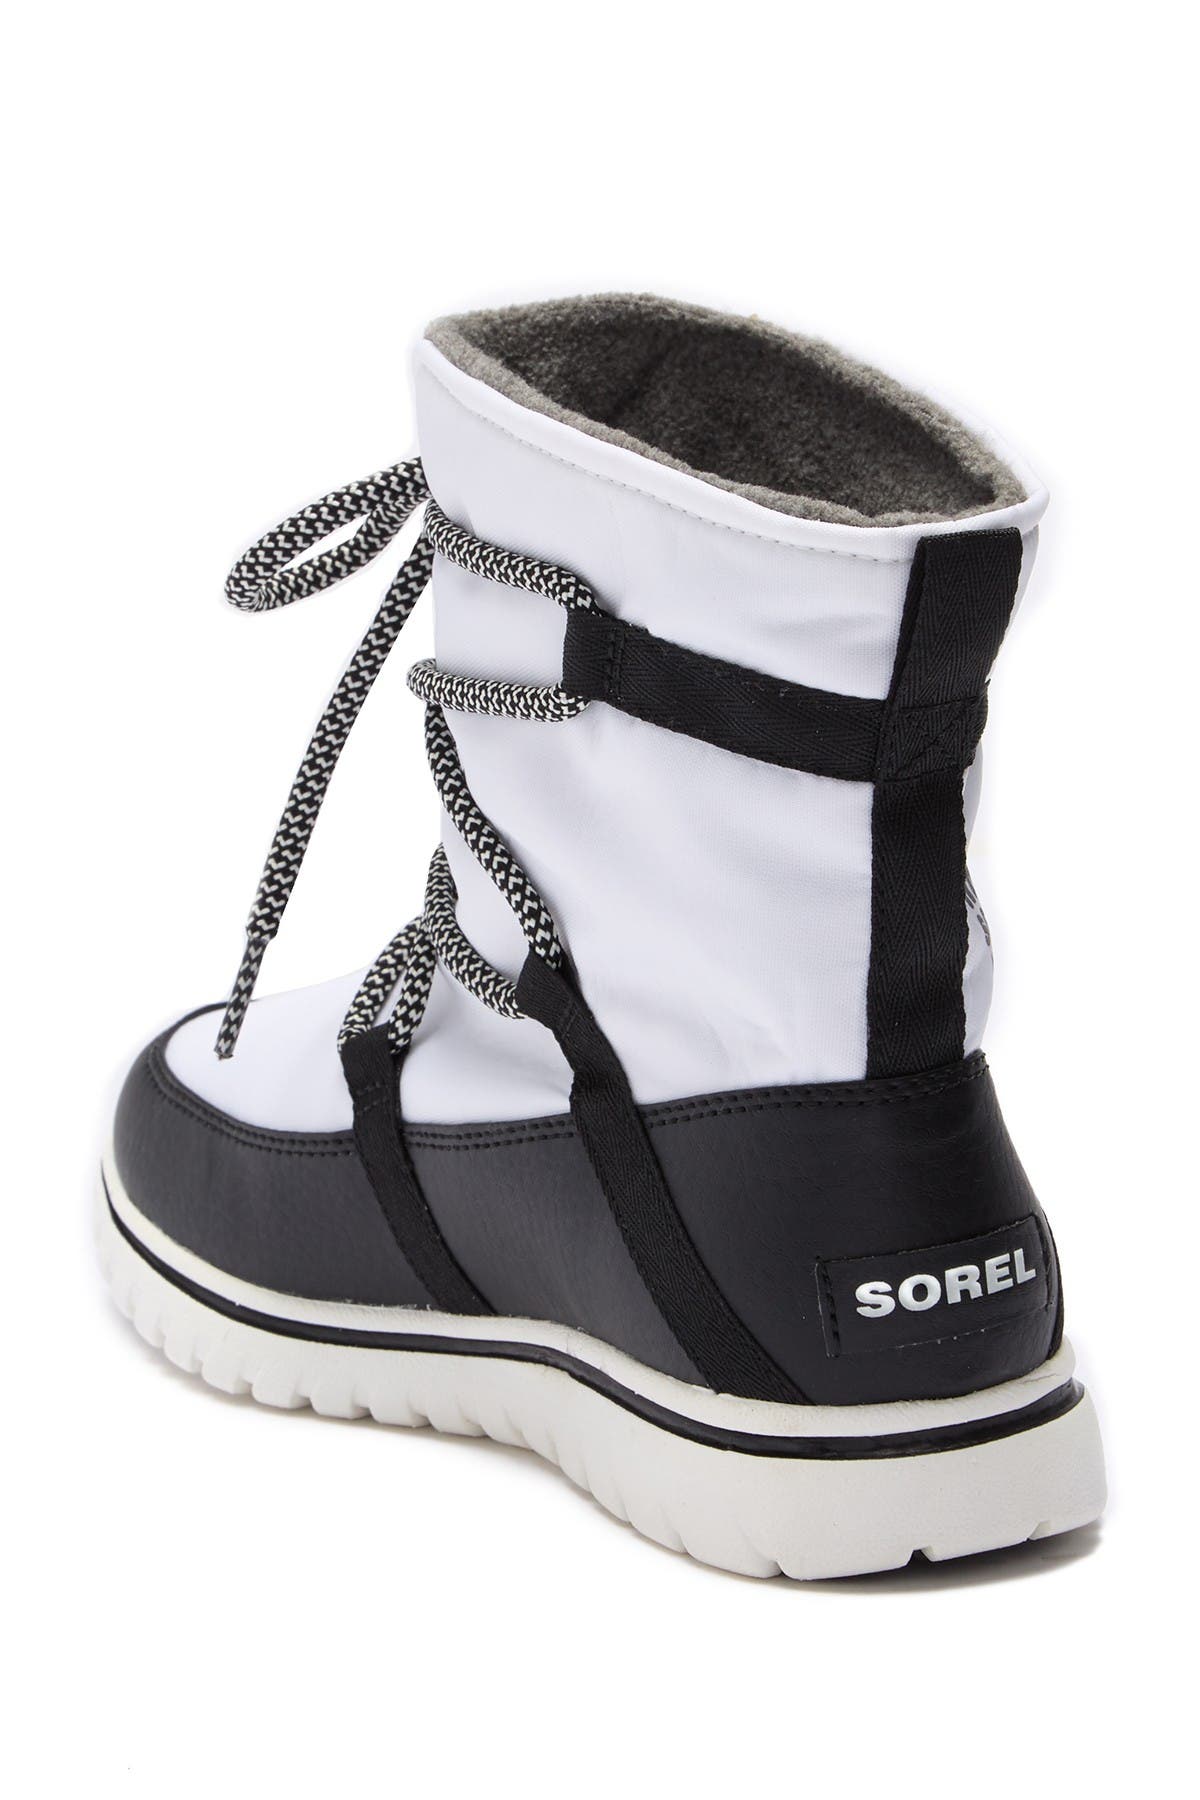 sorel women's cozy explorer waterproof winter boot